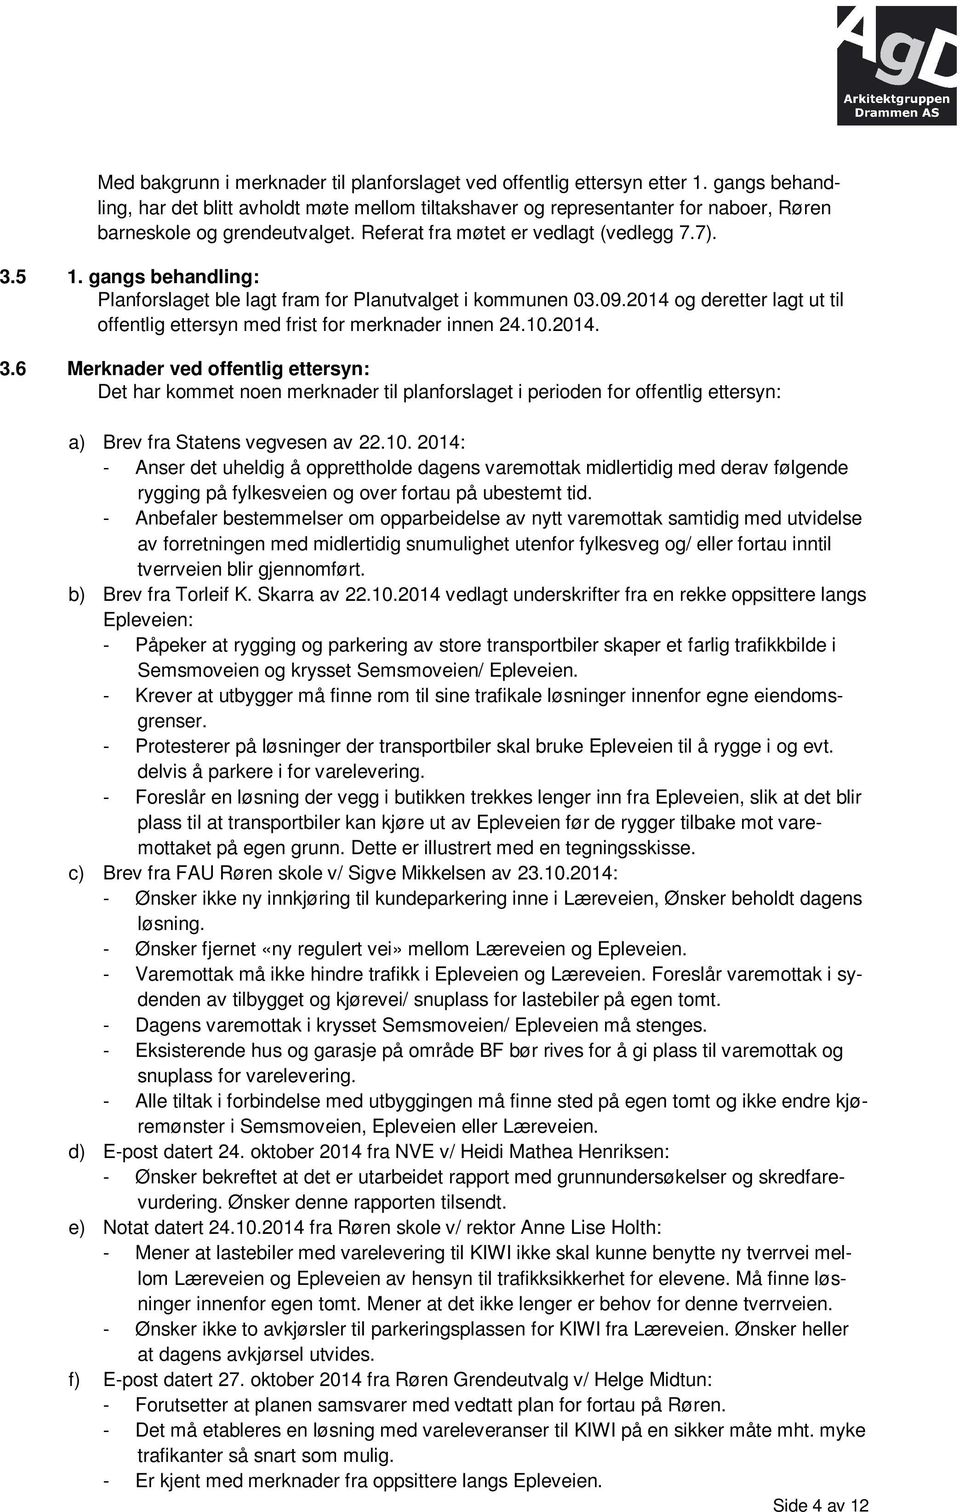 gangs behandling: Planforslaget ble lagt fram for Planutvalget i kommunen 03.09.2014 og deretter lagt ut til offentlig ettersyn med frist for merknader innen 24.10.2014. 3.